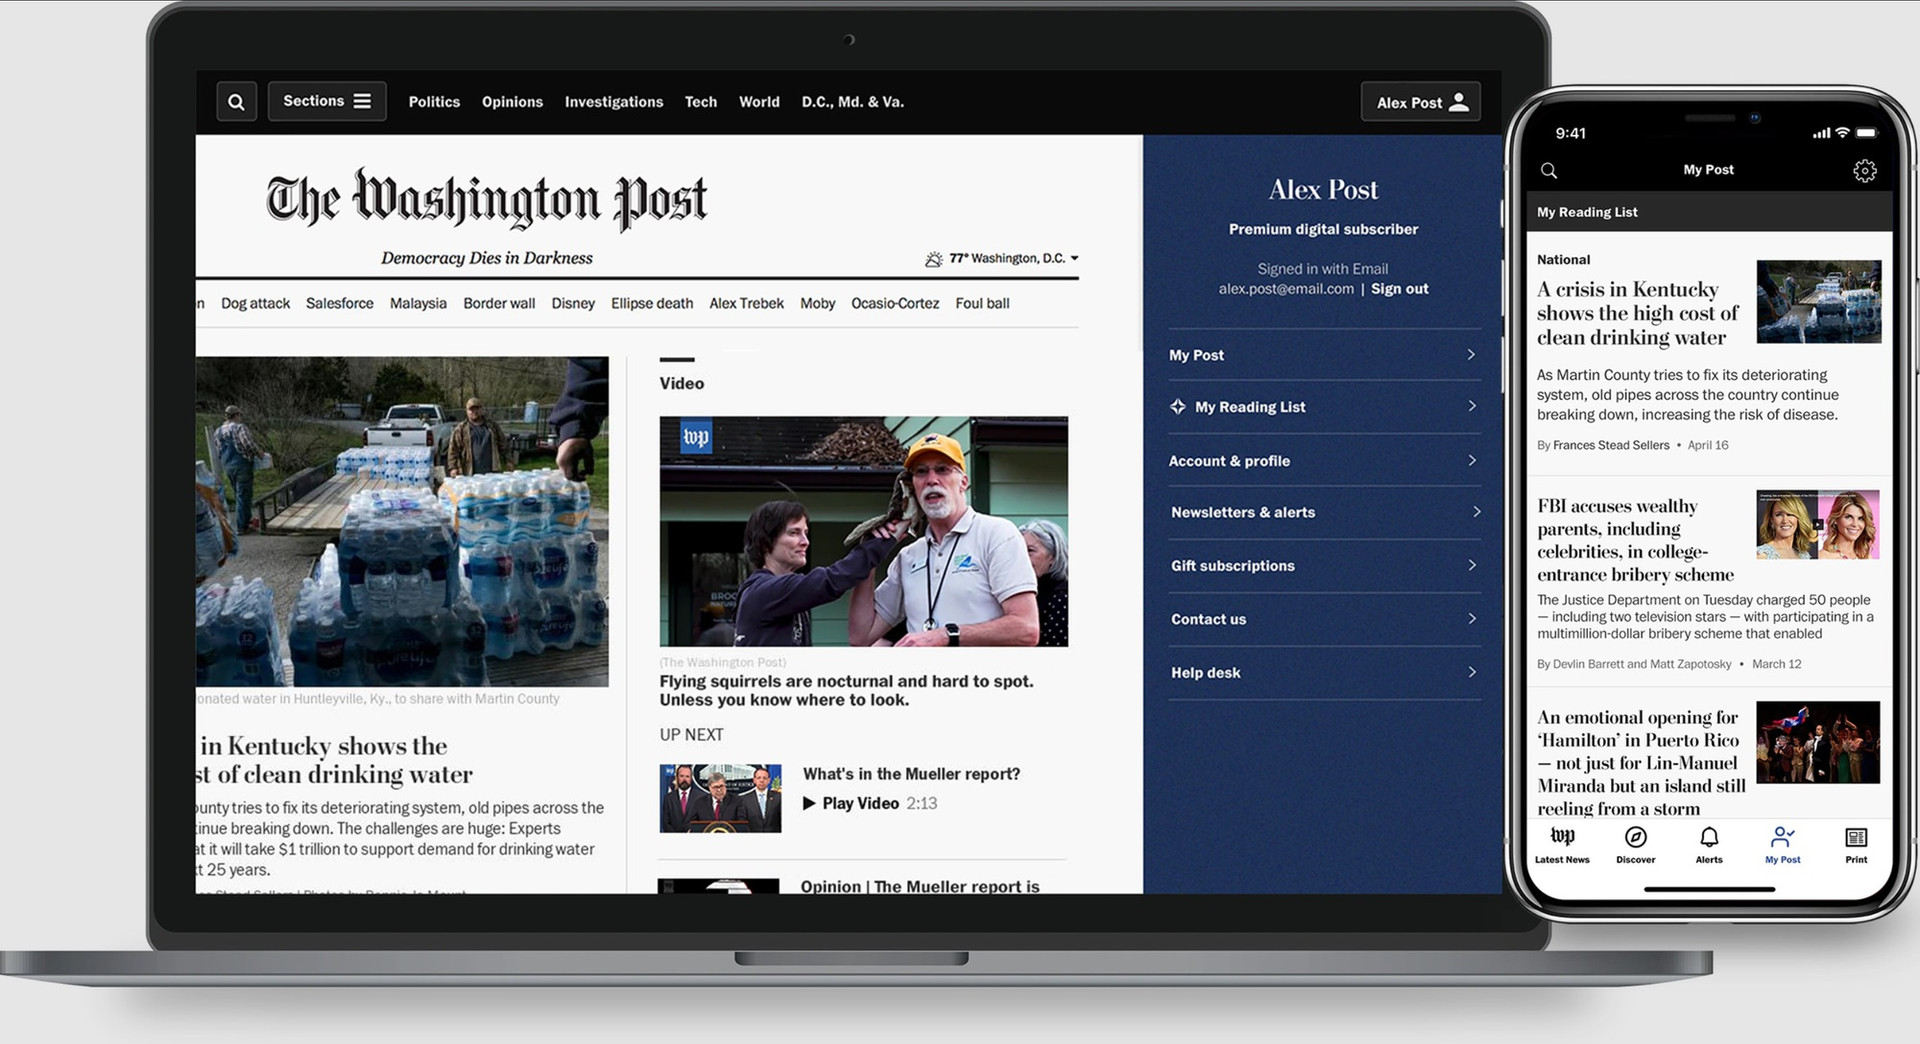 Kinh nghiệm đổi mới sáng tạo trong nội dung báo chí nhằm đa dạng hóa nguồn thu của tờ The Washington Post - Ảnh 1.